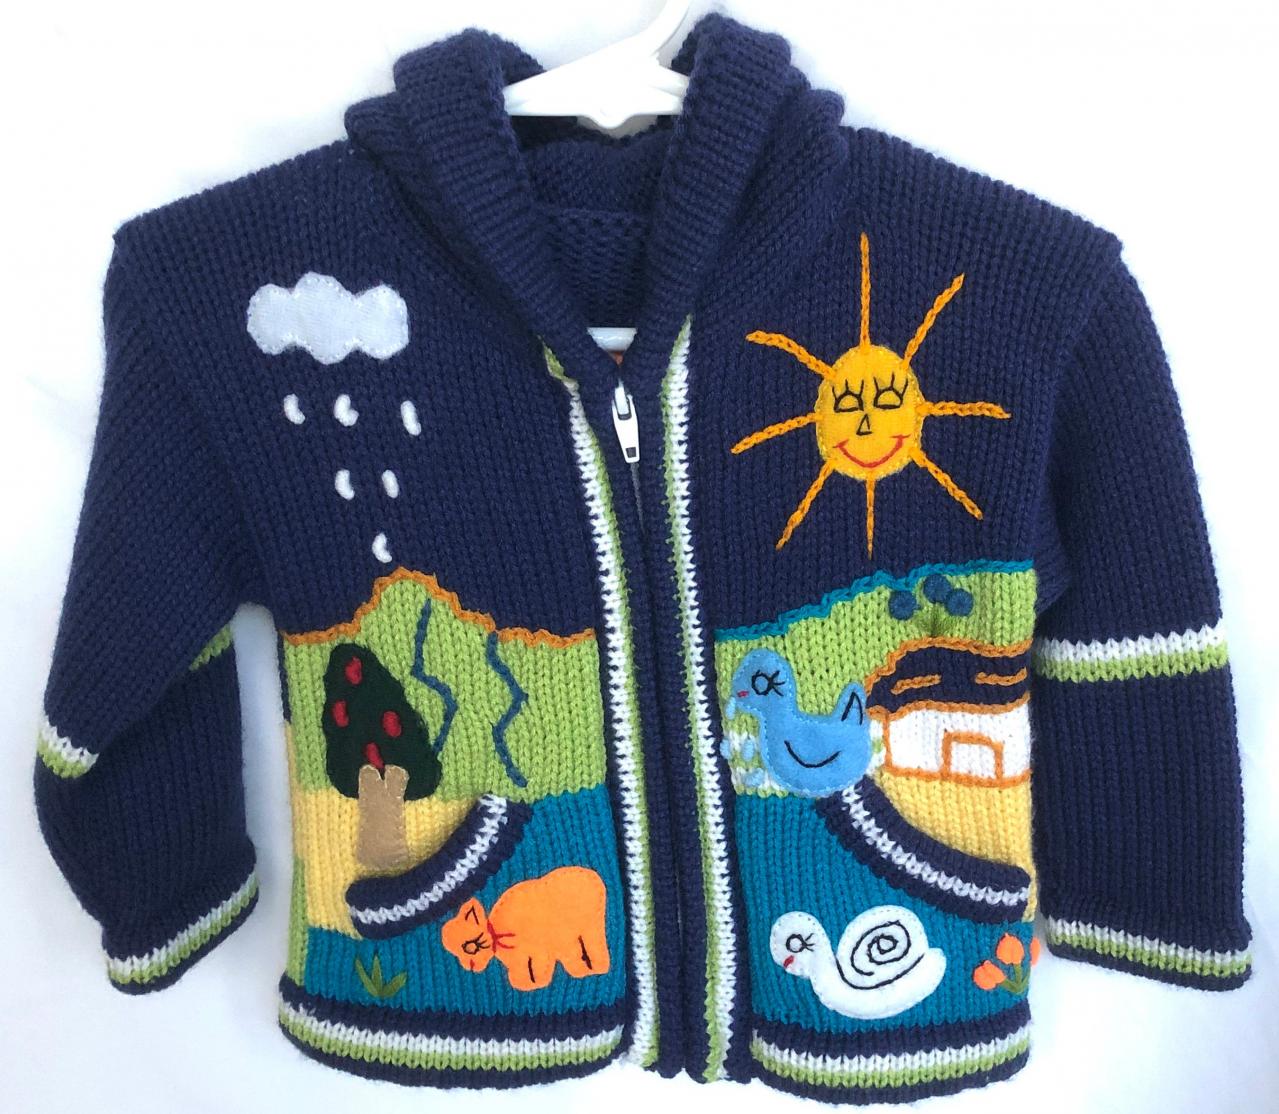 Size 0 Hooded Jacket, Navy Blue Jacket, Kids Jacket, Toddler Jacket, Winter Jacket, Handmade Jacket, Zipper Jacket, Embroidered Jacket